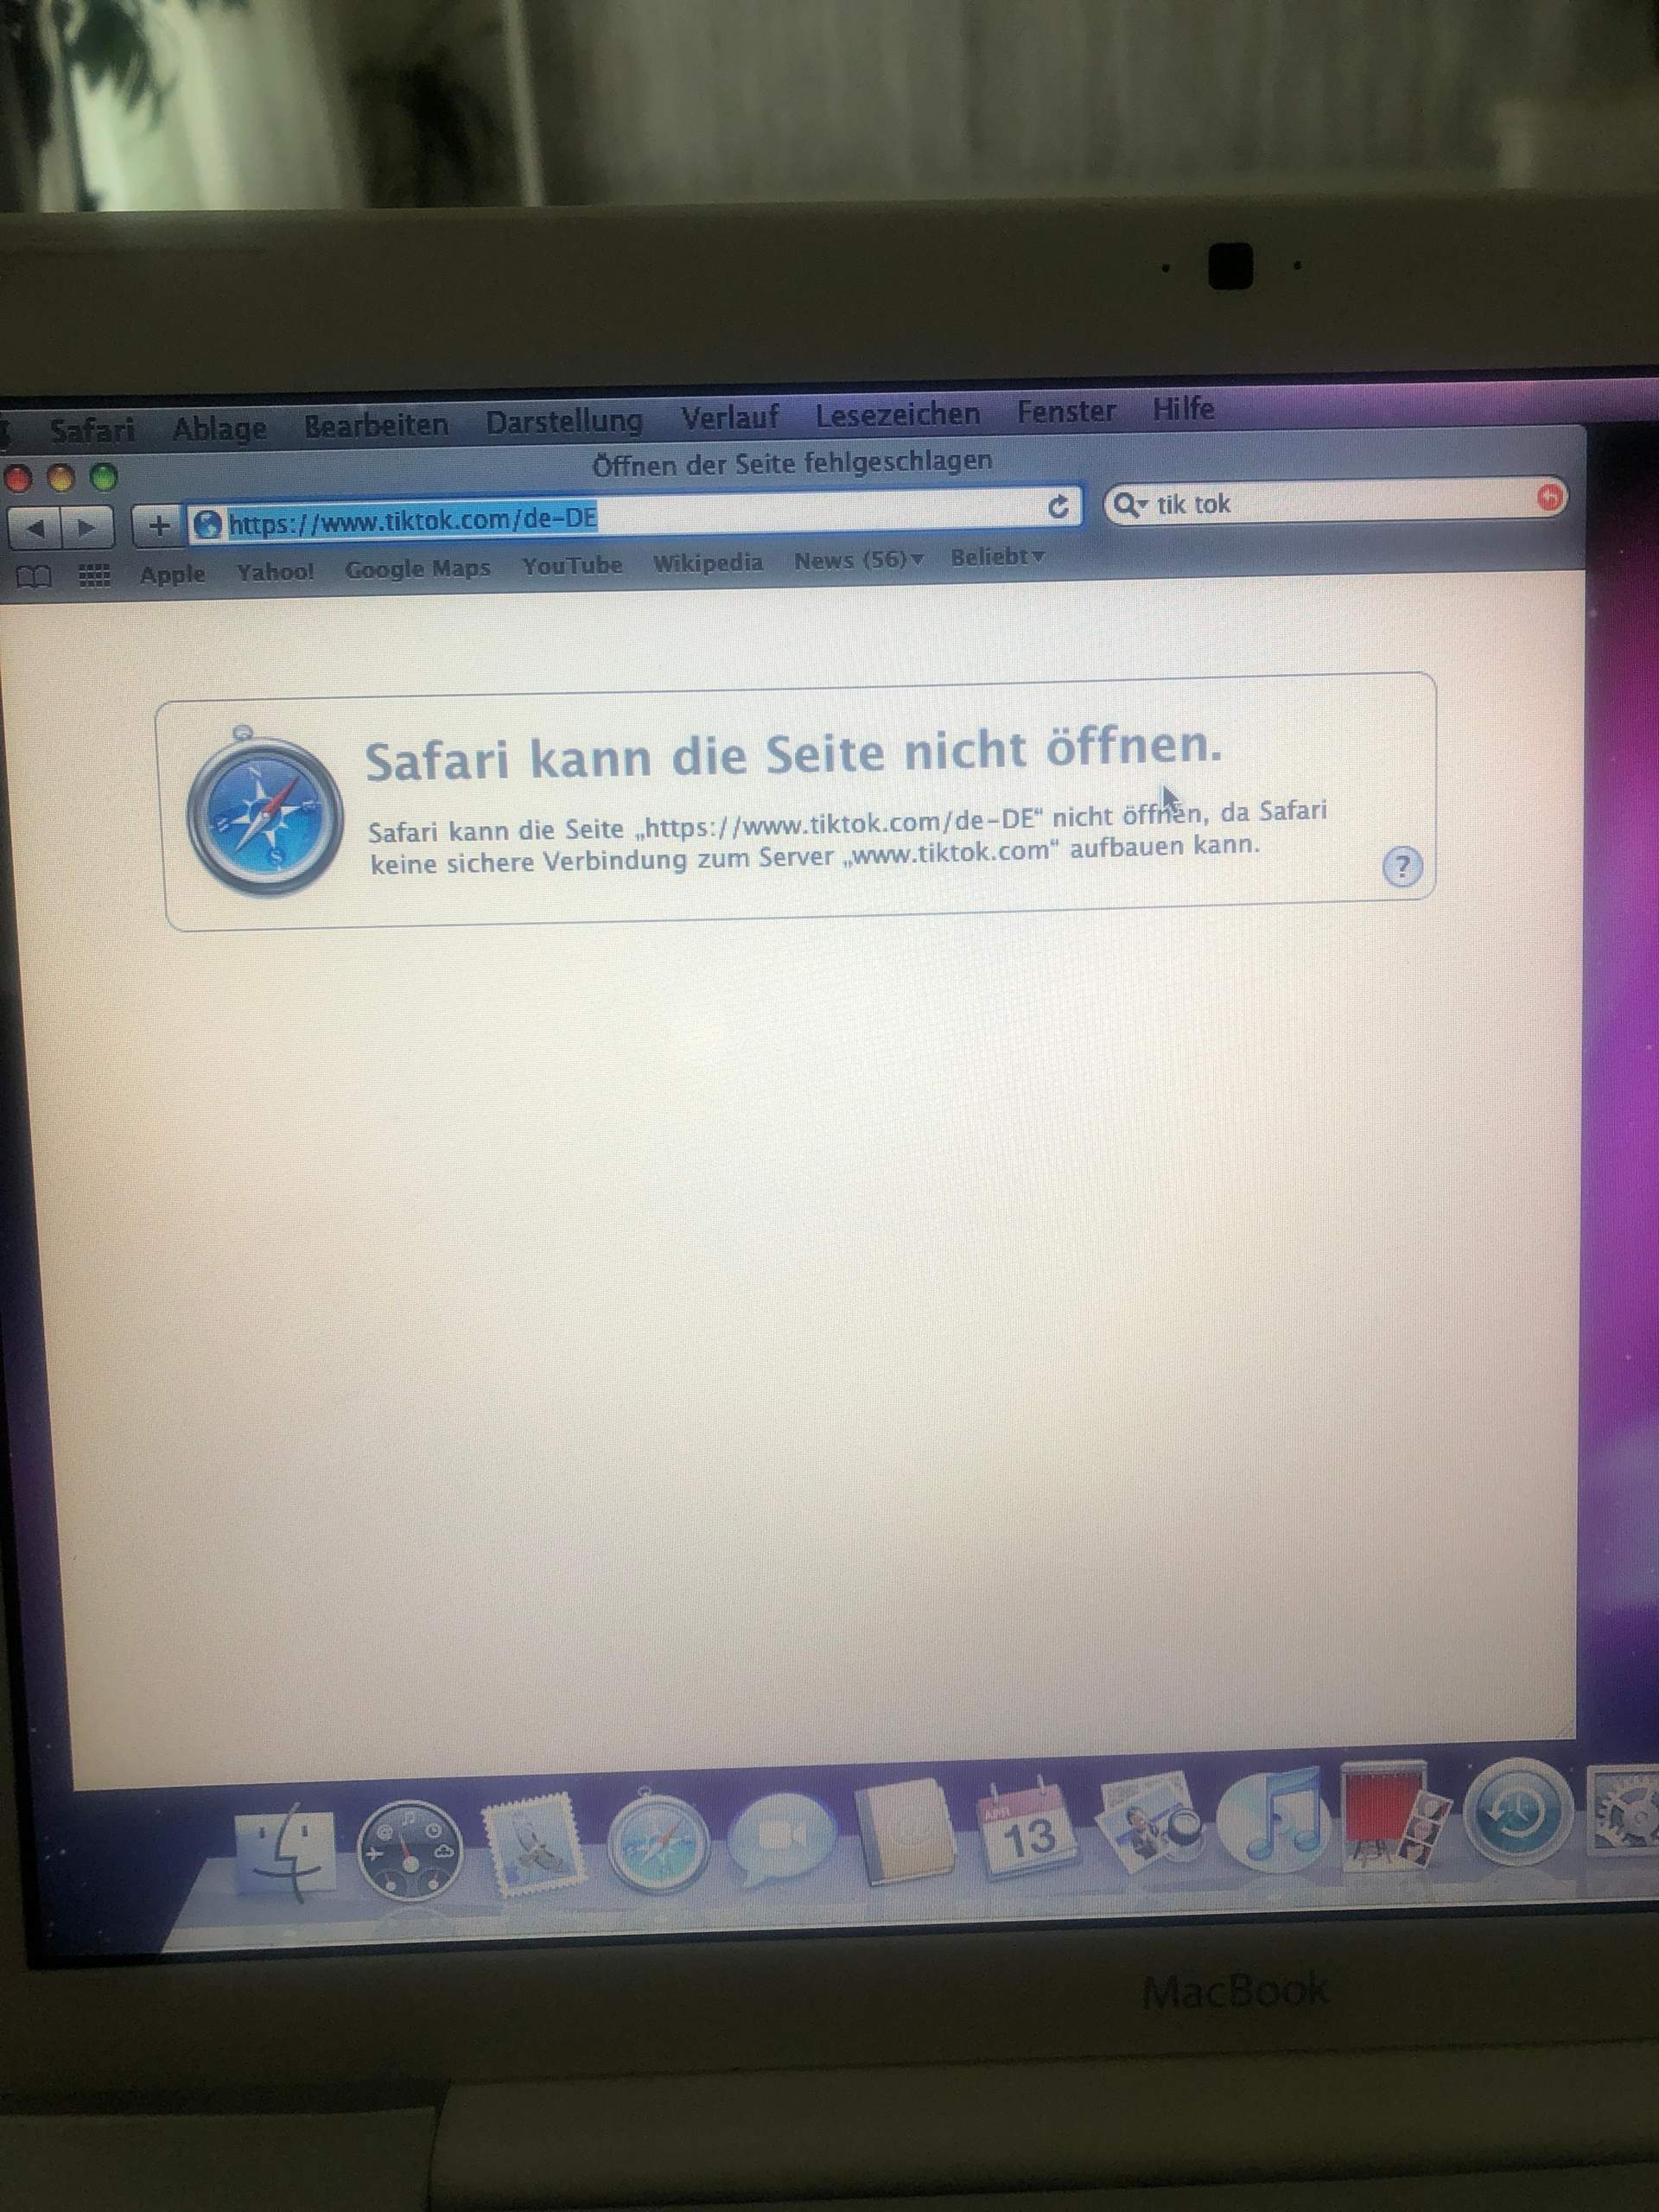 macbook air safari keine sichere verbindung zum server